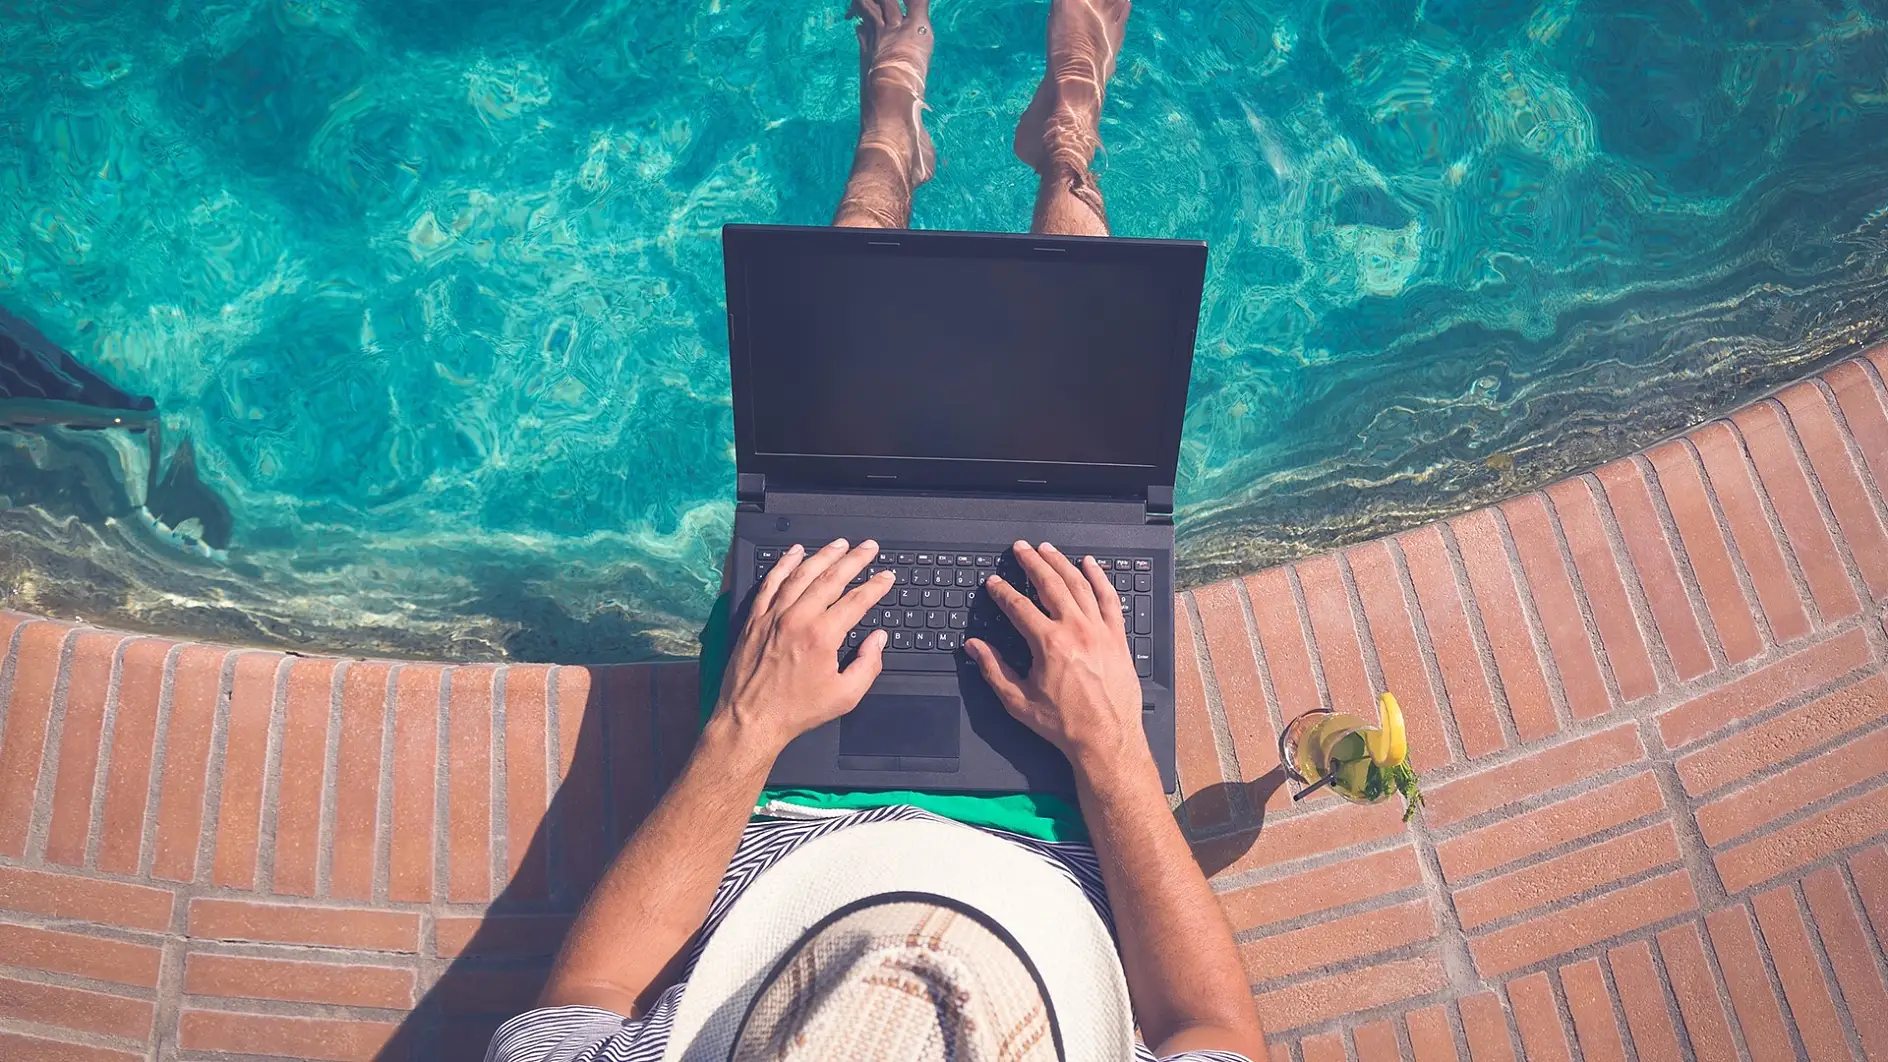 Arbeiten im Urlaub ist keine Seltenheit geworden. Laut Gesetz müssen Arbeitnehmer jedoch nicht erreichbar sein. Also: Laptop ausschalten und abschalten.